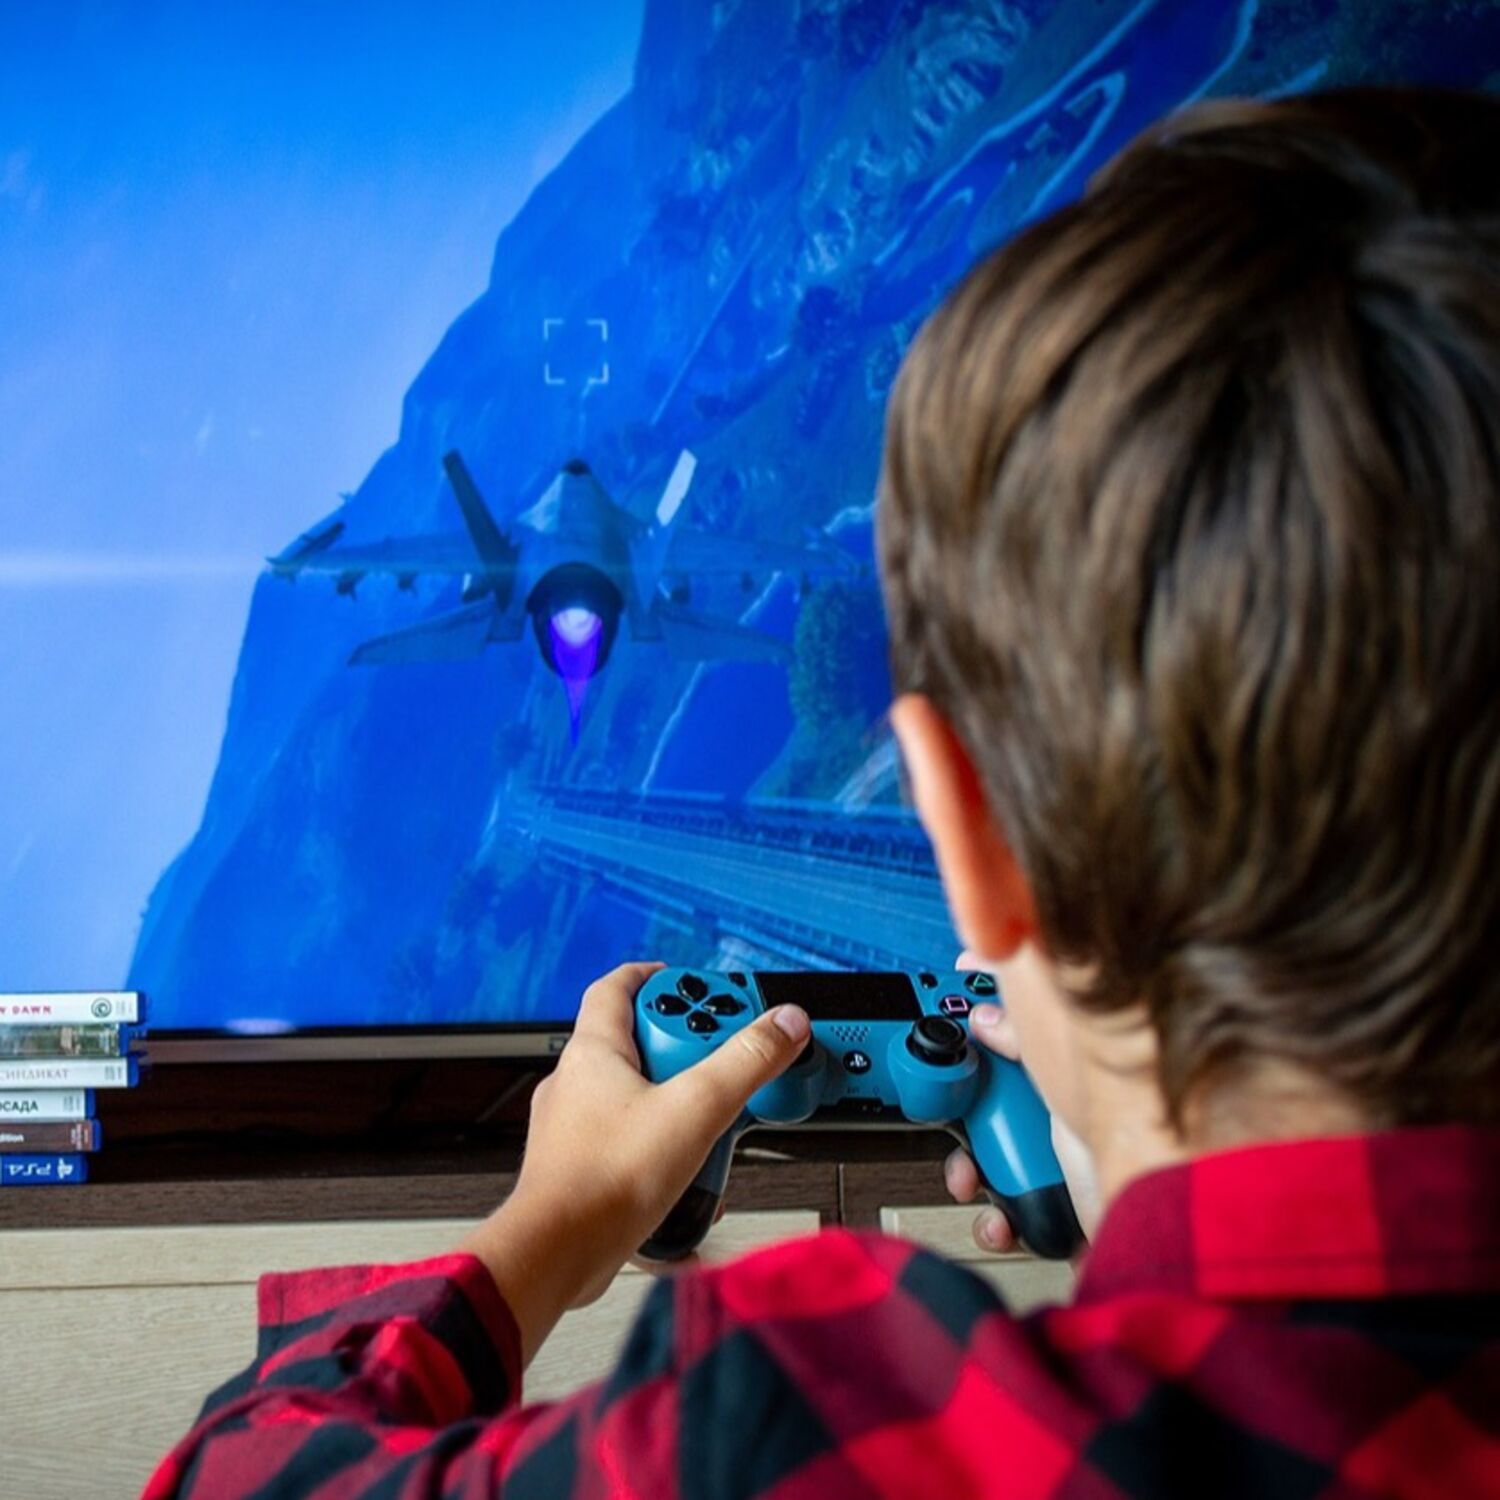 Comment réduire le temps d'écran de vos enfants ?